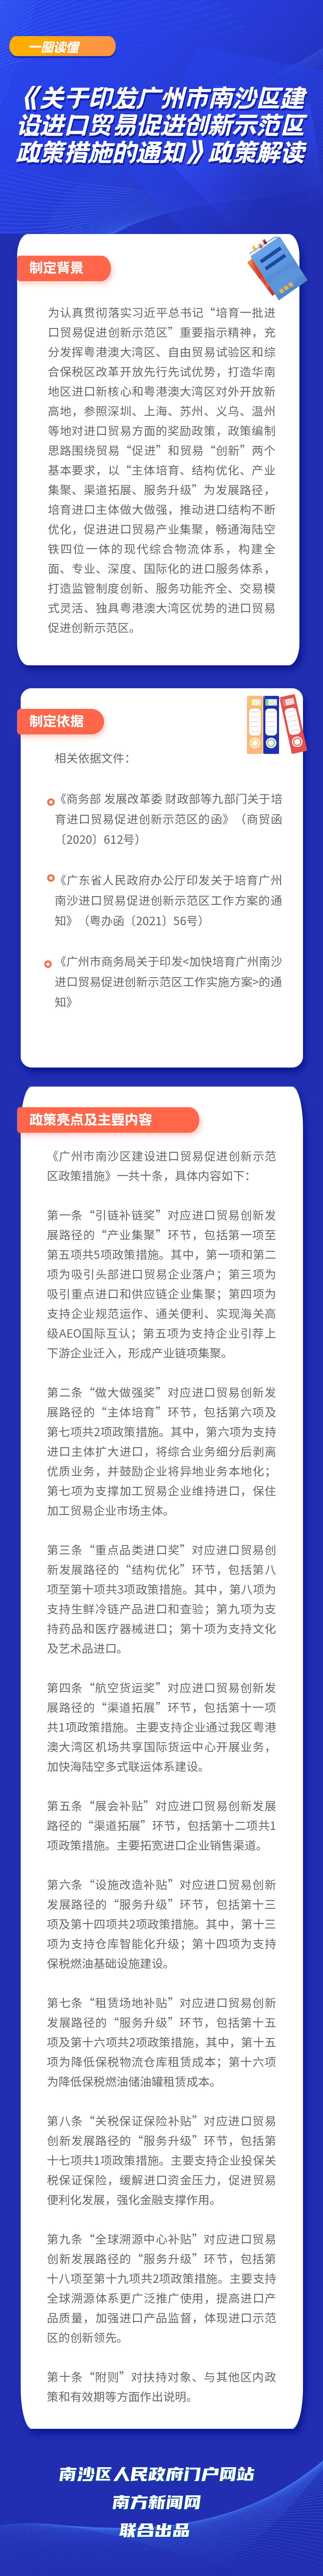 《关于印发广州市南沙区建设进口贸易促进创新示范区政策措施的通知》政策解读 (1).png